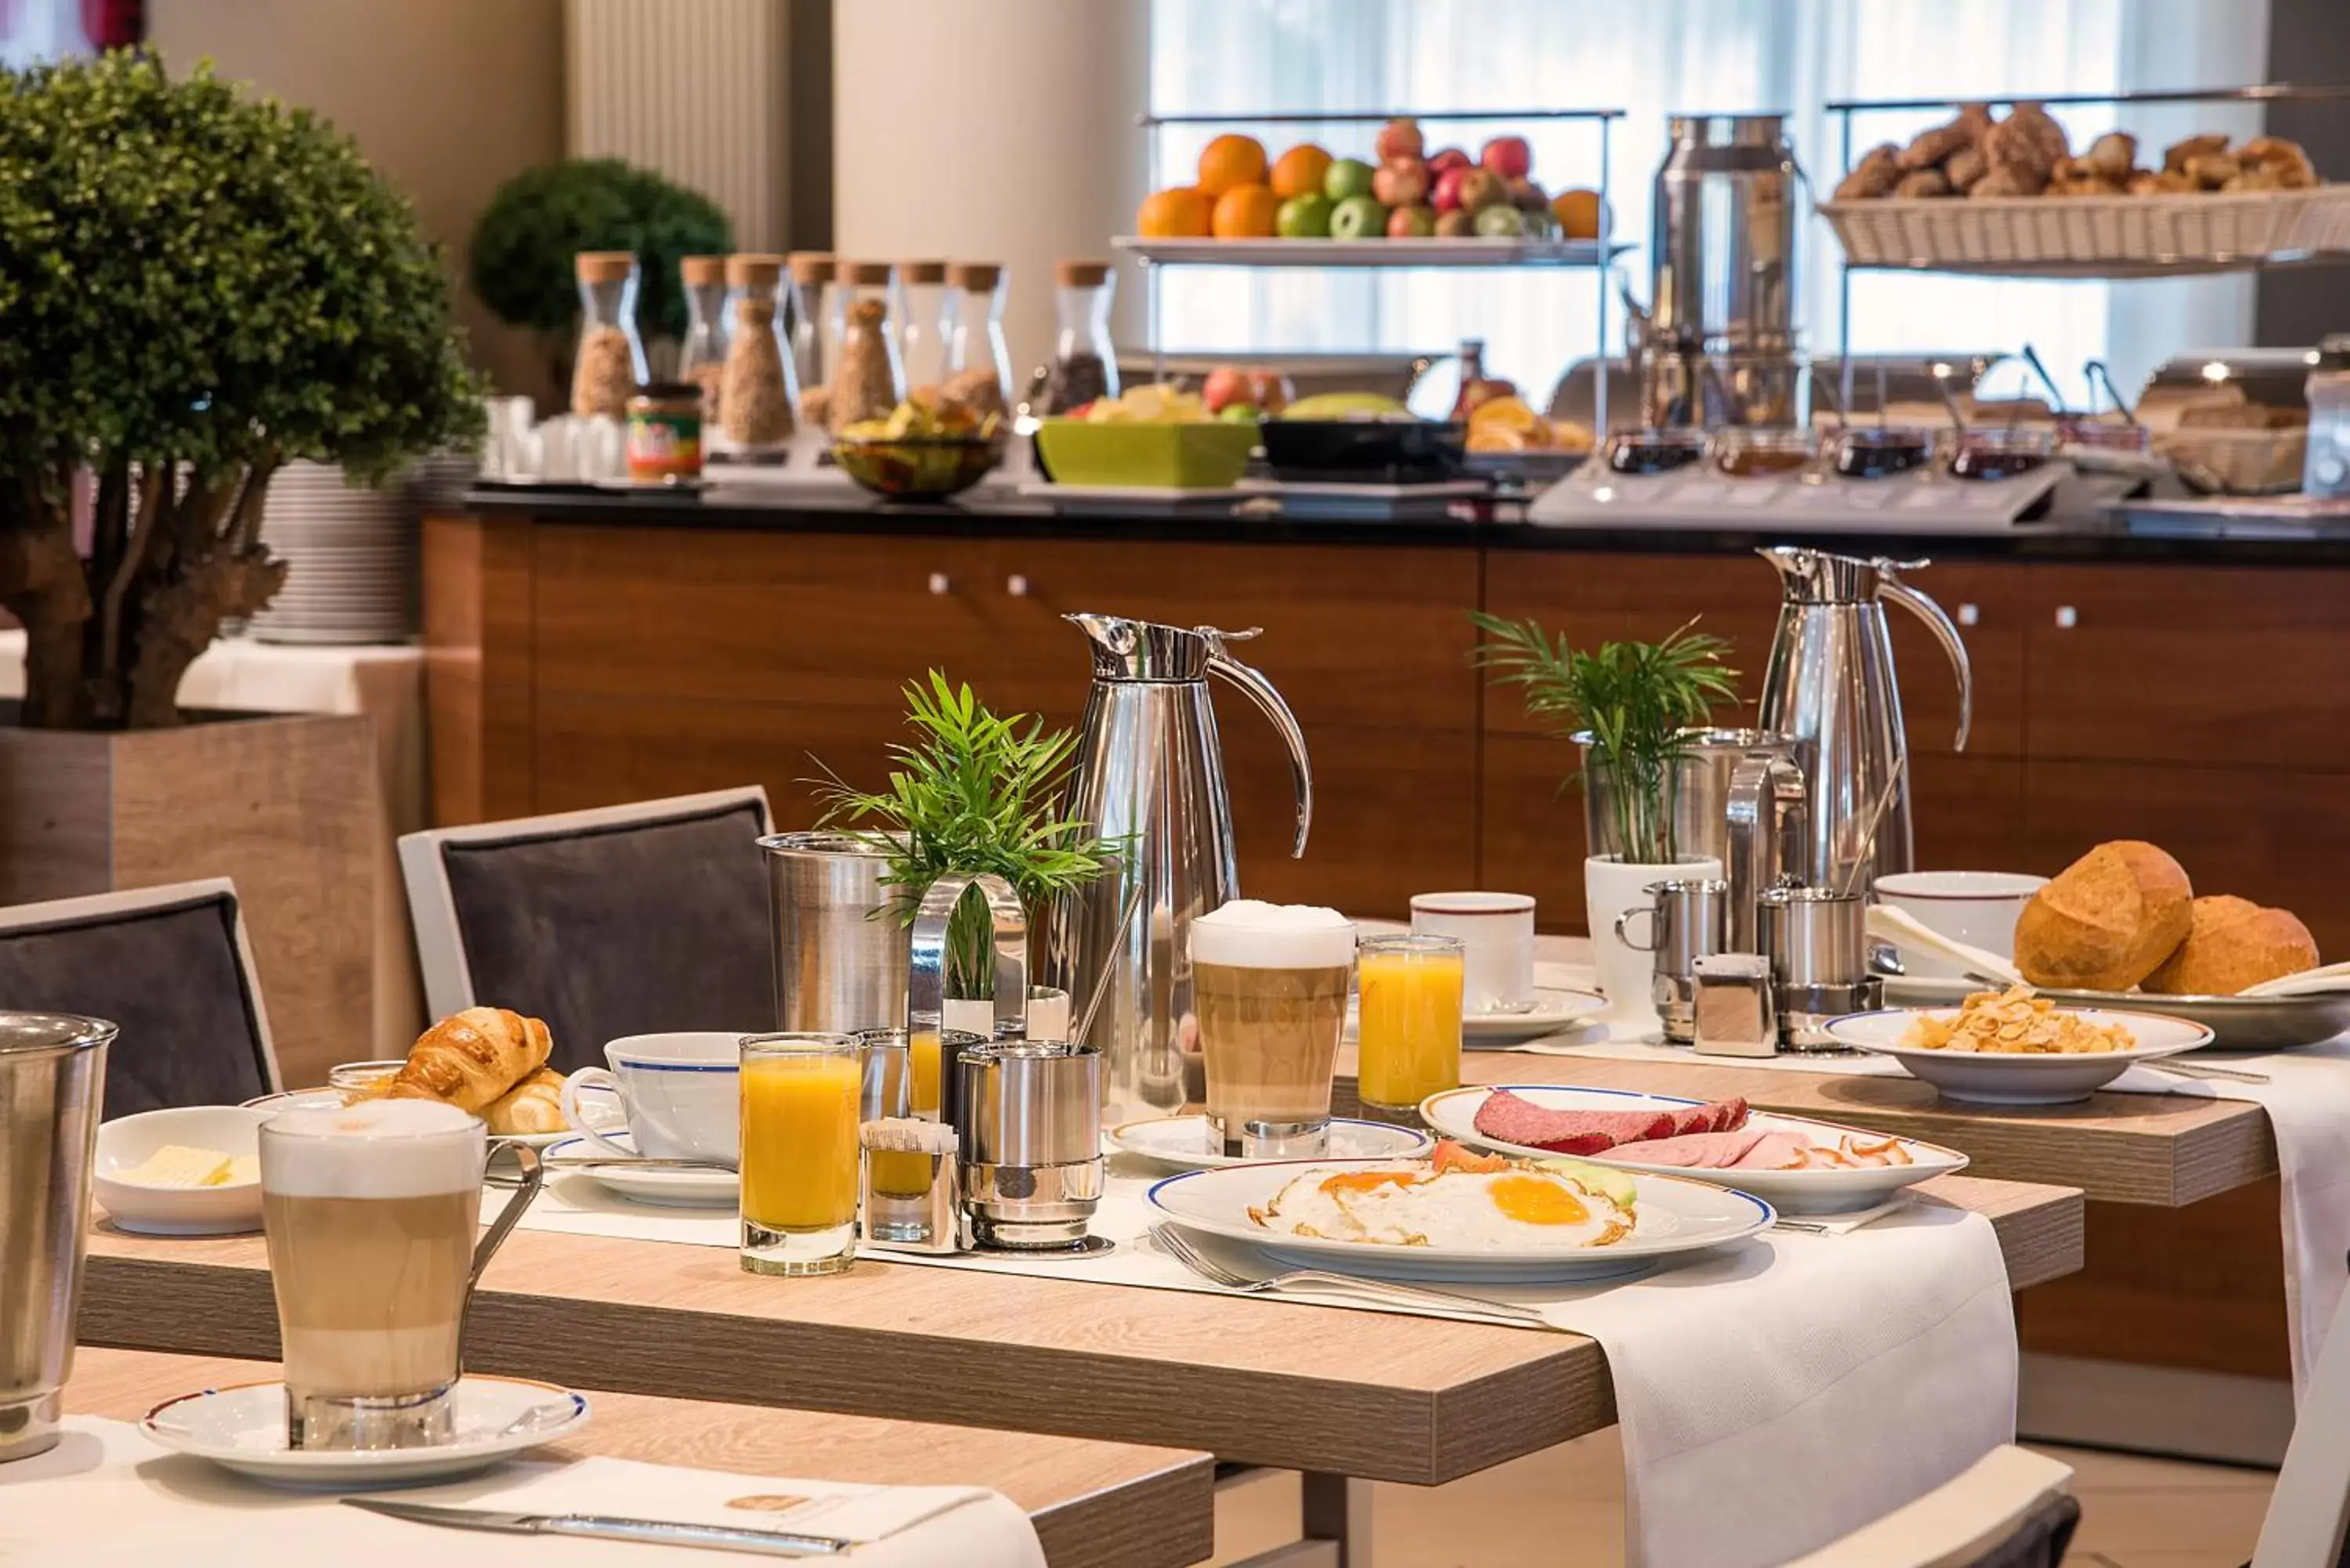 American breakfast, Breakfast in Best Western Premier IB Hotel Friedberger Warte